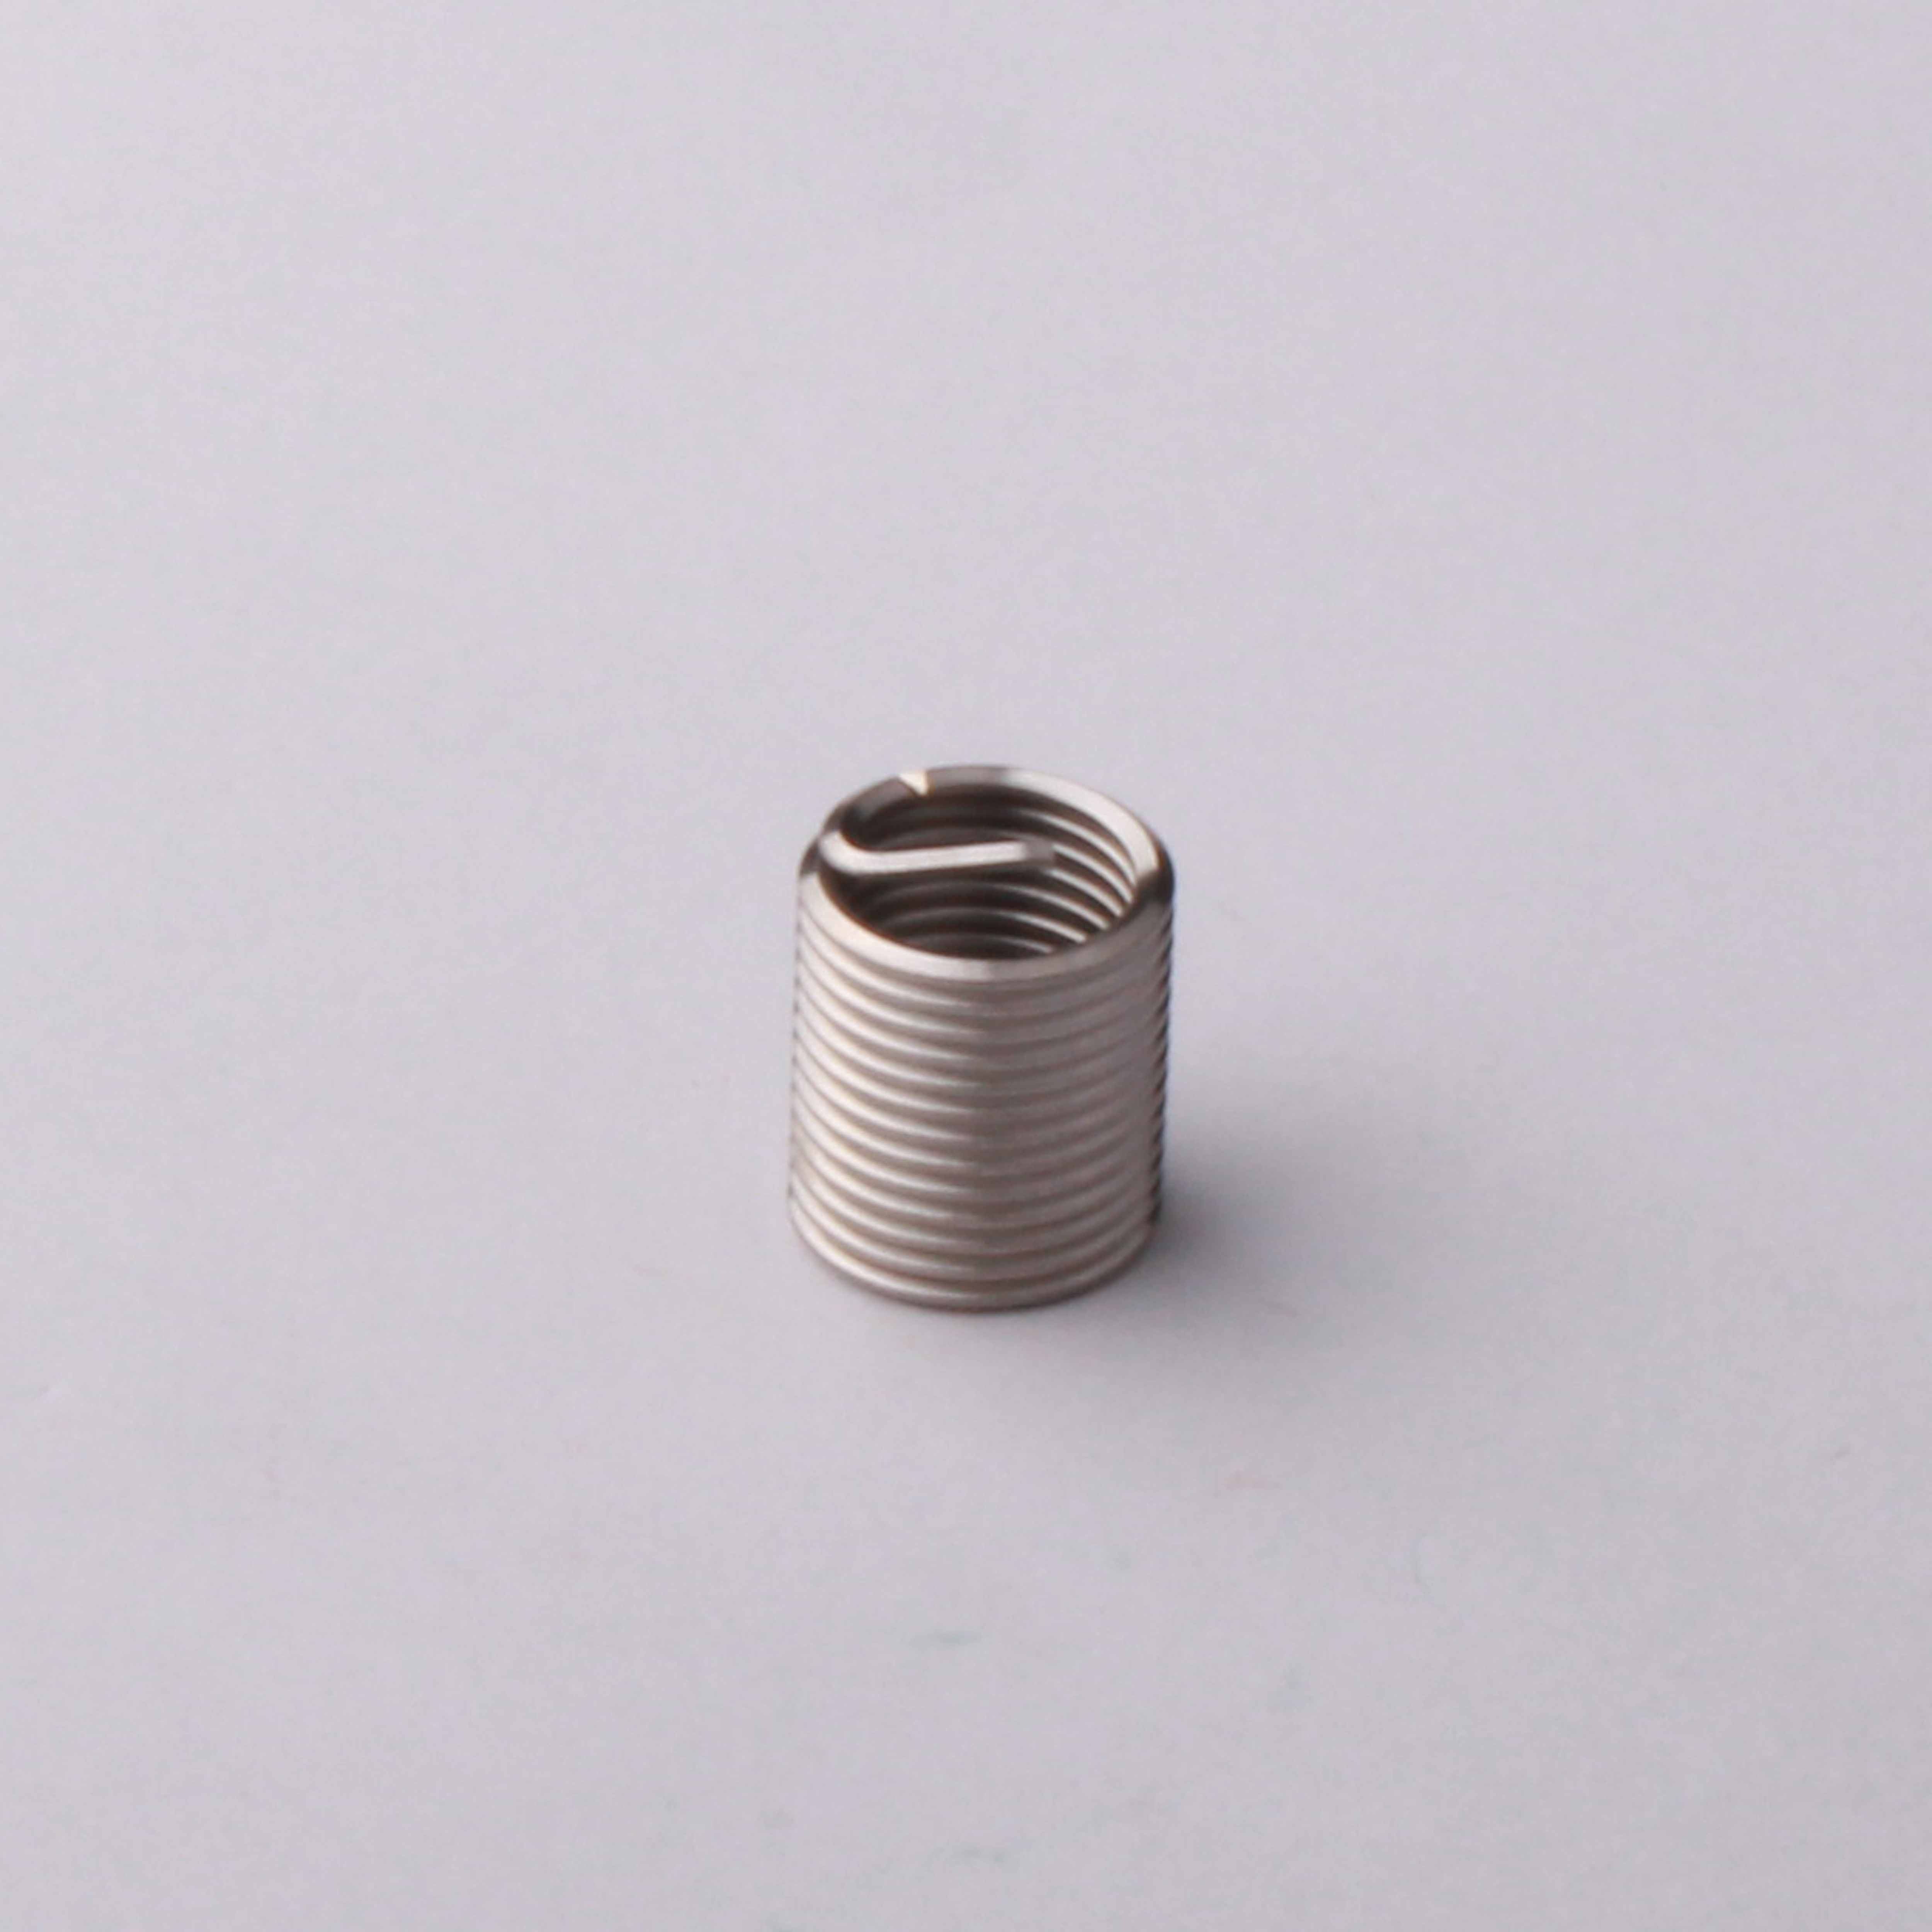 M2 coil thread insert for aluminum 